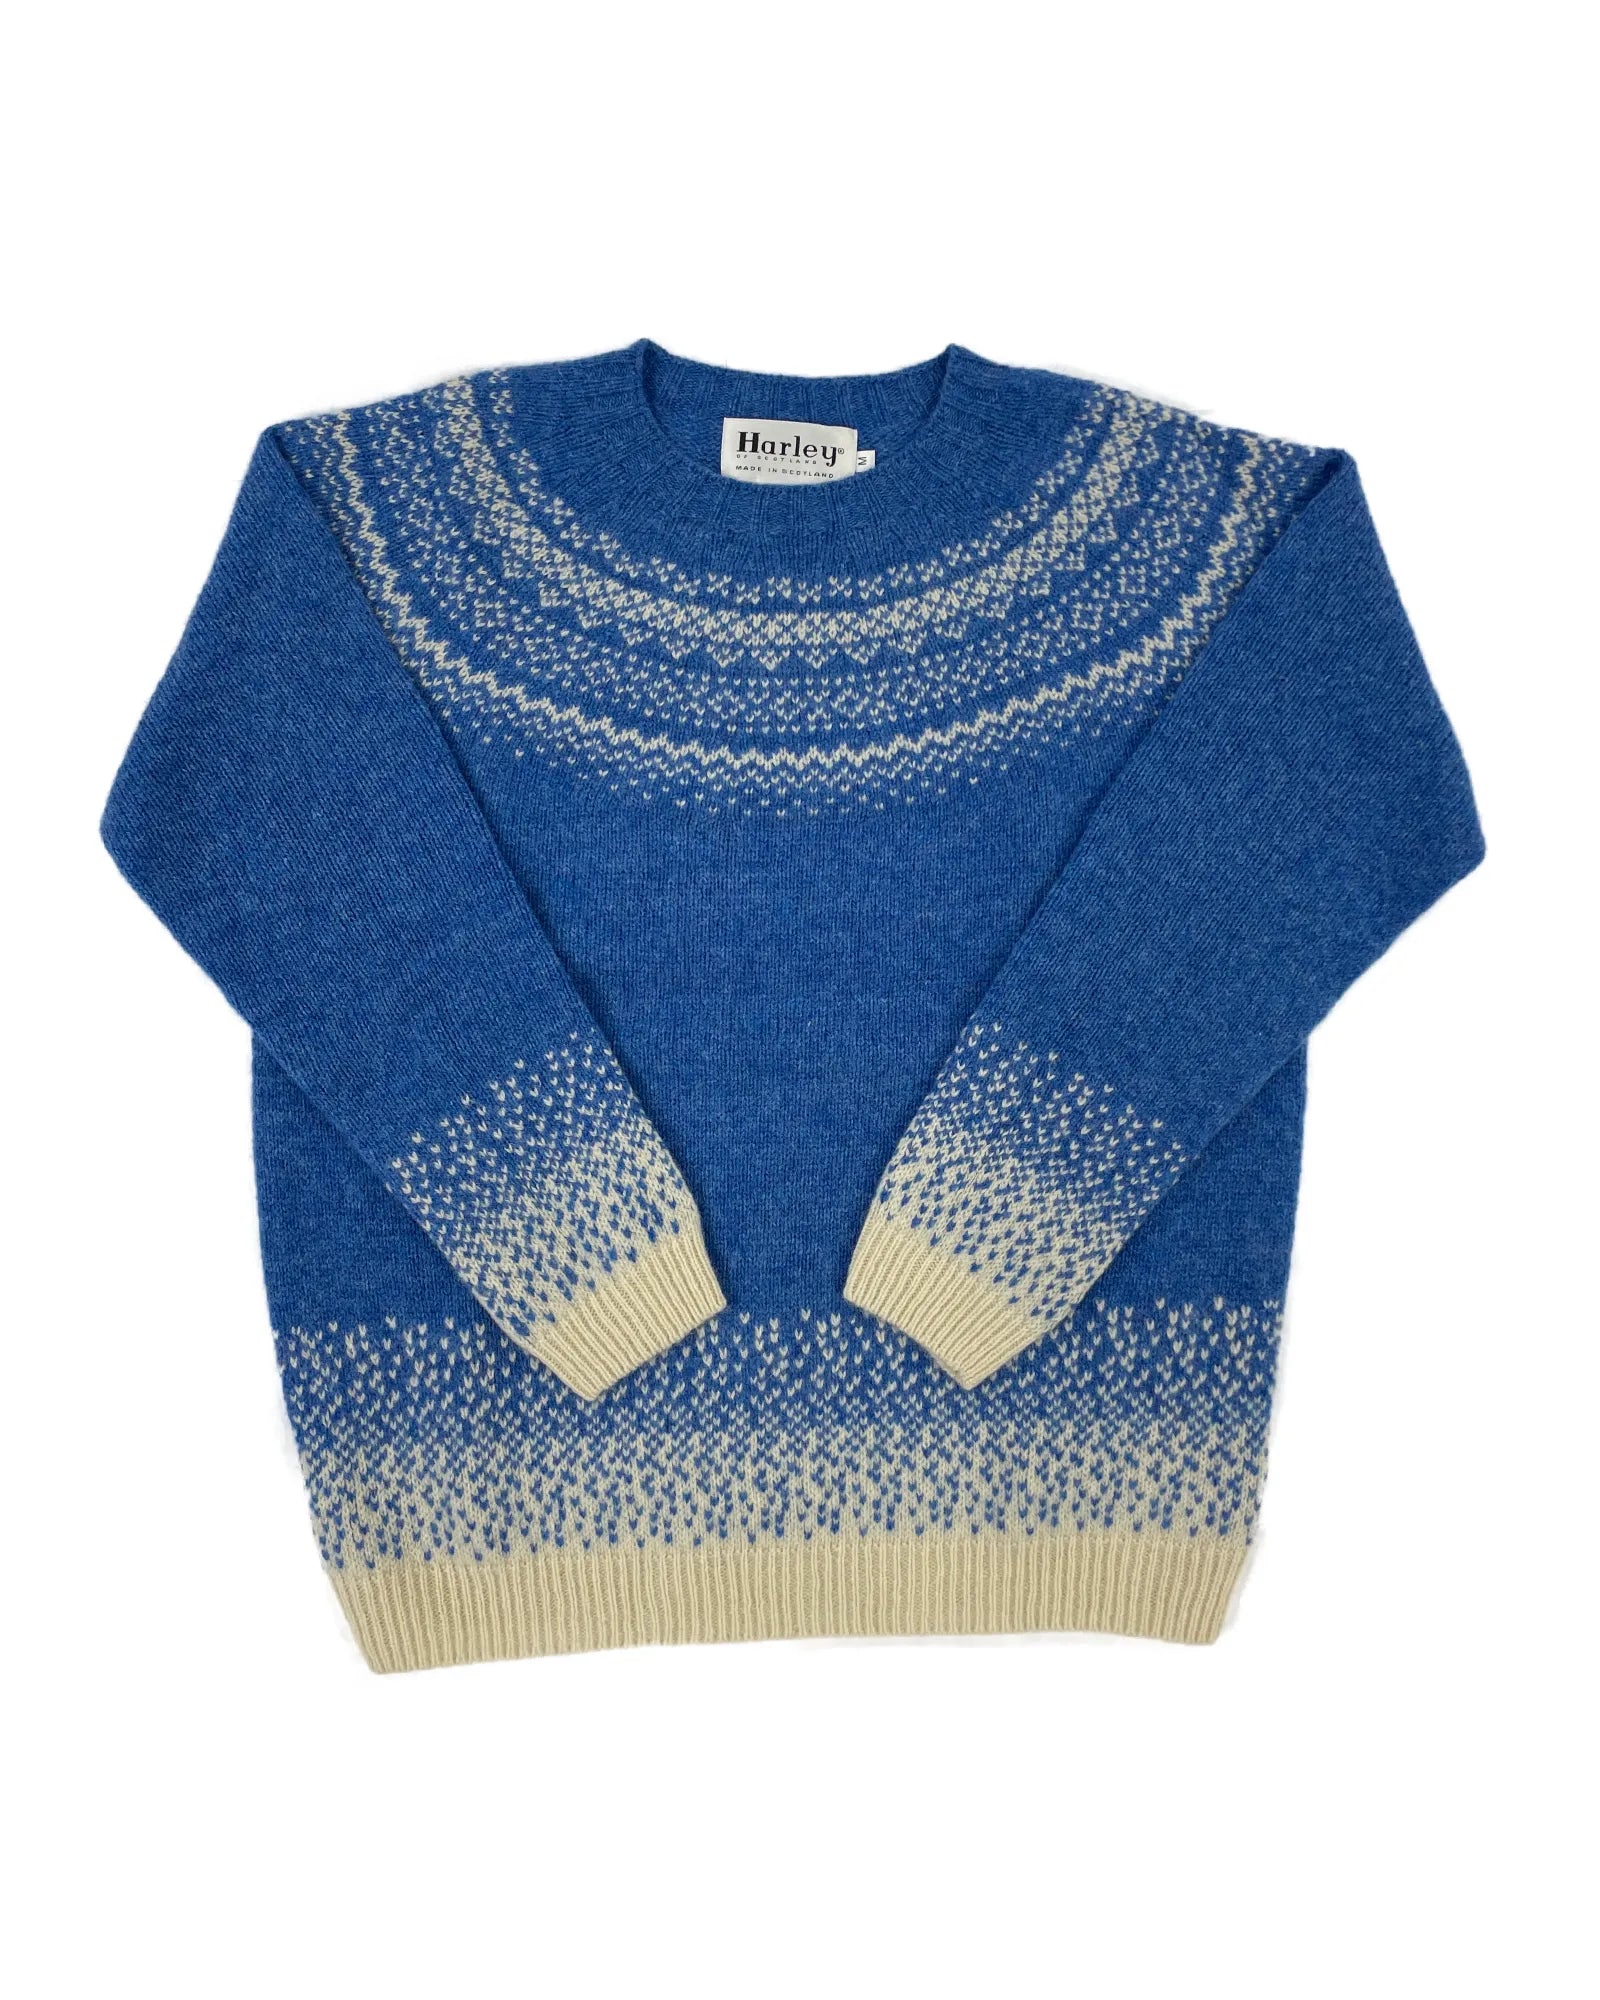 Women's Fair Isle Knitted Jumper (L5113/7) - Cream/Blue Toon